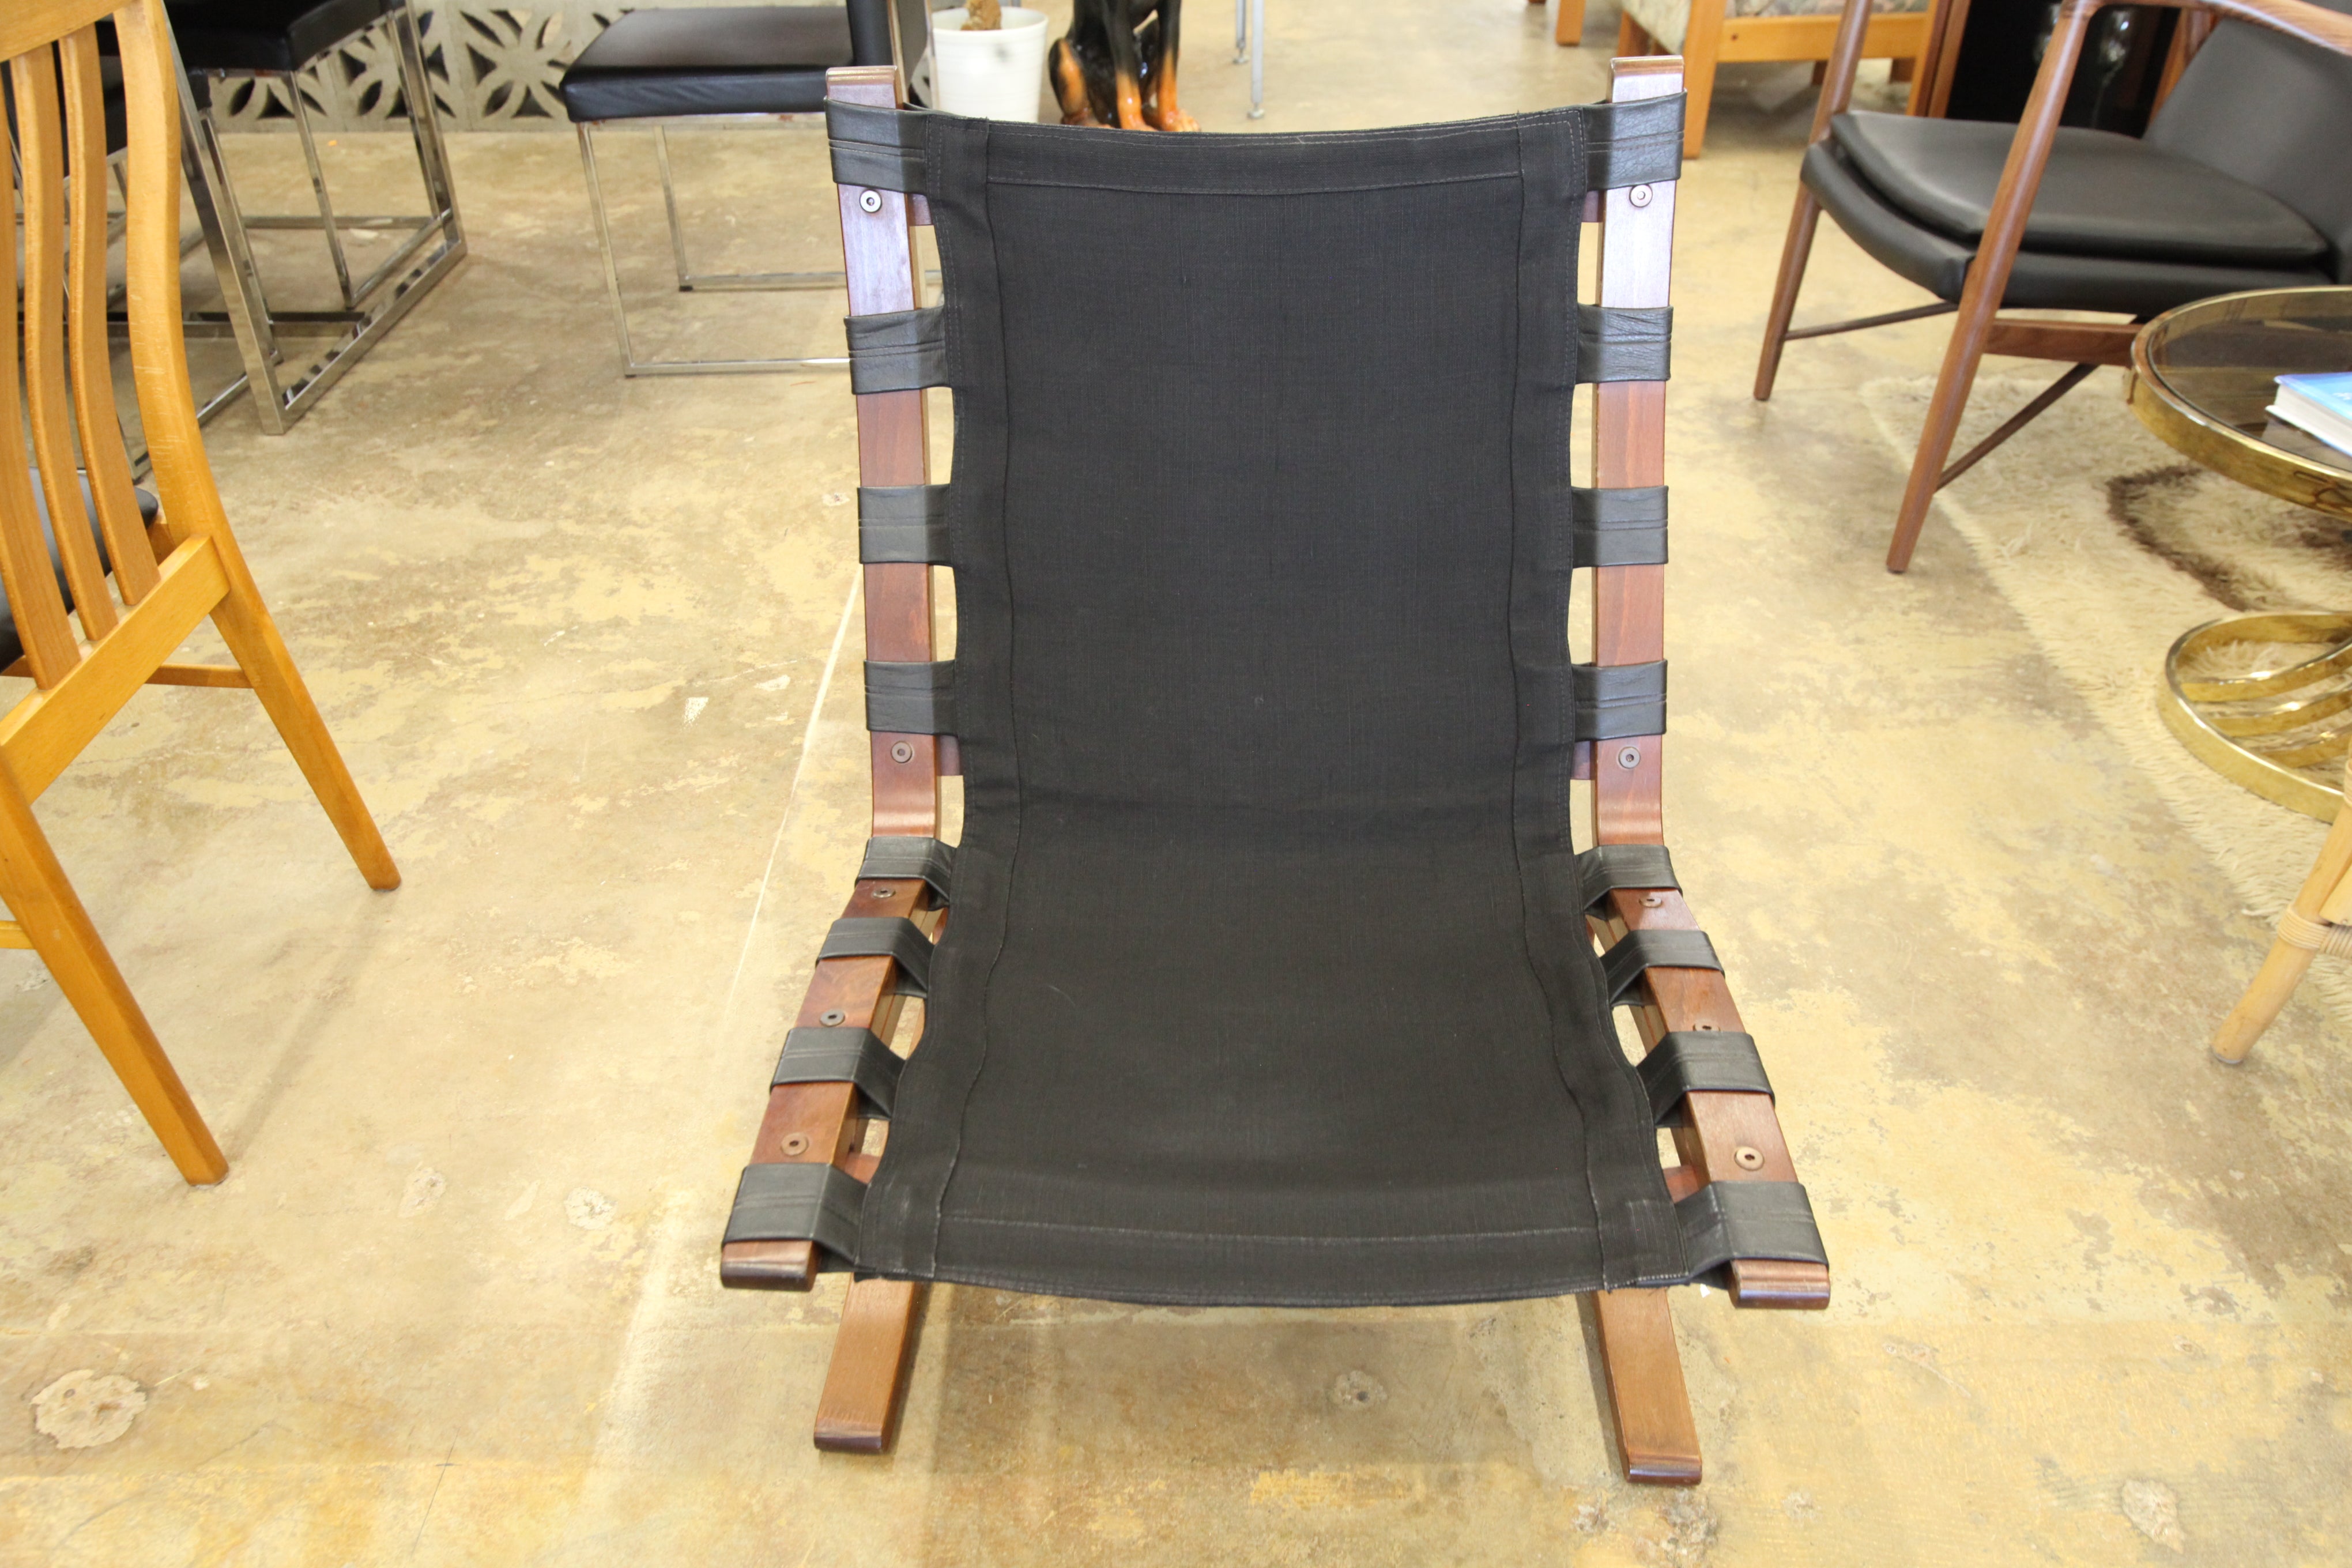 Vintage Leather Kengu Chair (24"W x 31.75"H x 26"D)